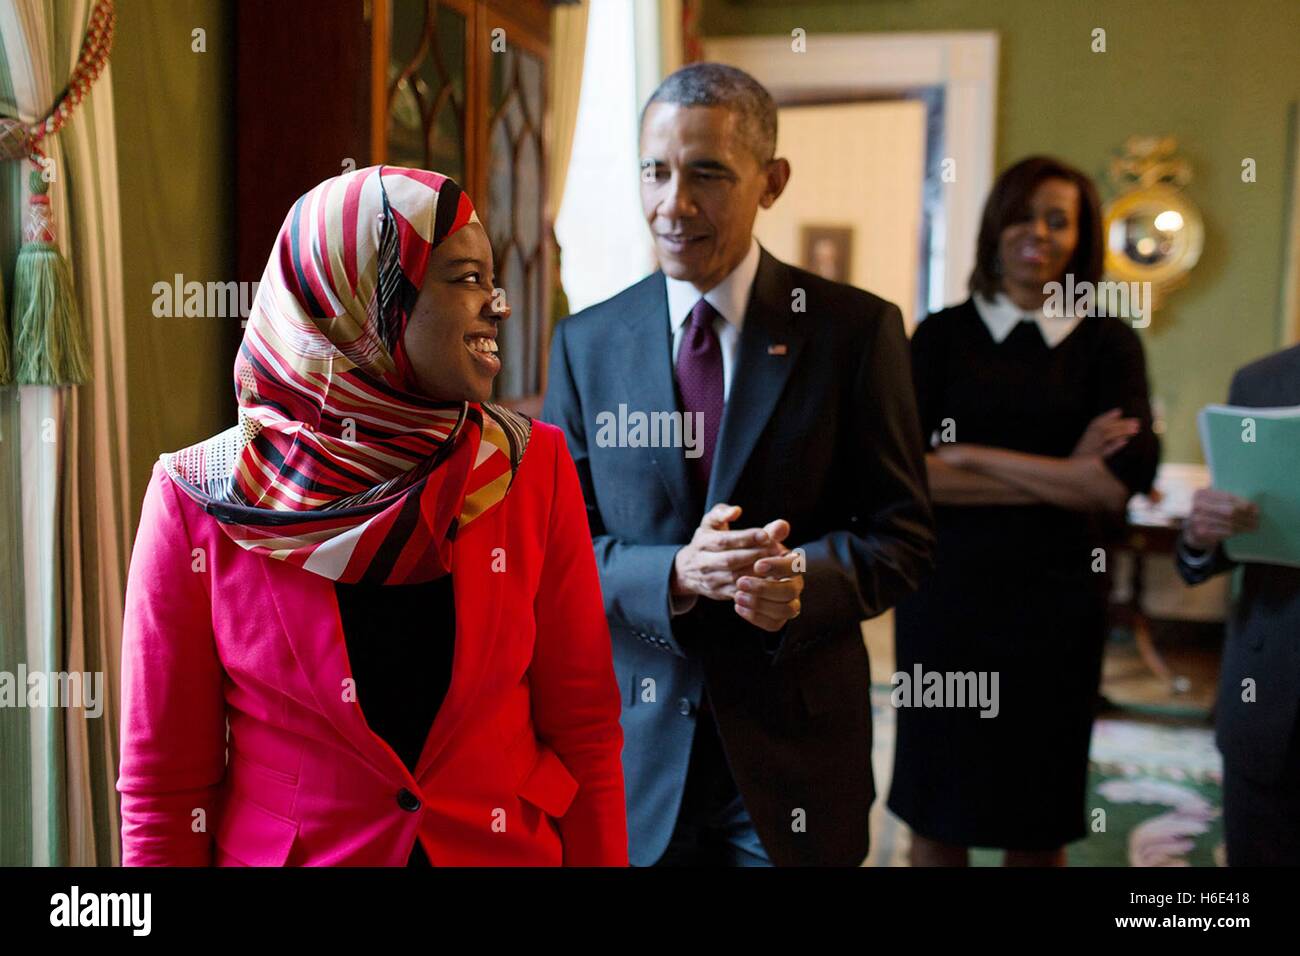 Estudiante de Harvard Saheela Ibraheem mira hacia atrás al presidente estadounidense Barack Obama y la Primera Dama Michelle Obama, mientras se prepara para introducirlos en una recepción celebrando el Mes de la Historia Negra en la Sala Verde de la Casa Blanca, el 26 de febrero de 2015 en Washington, DC. Foto de stock